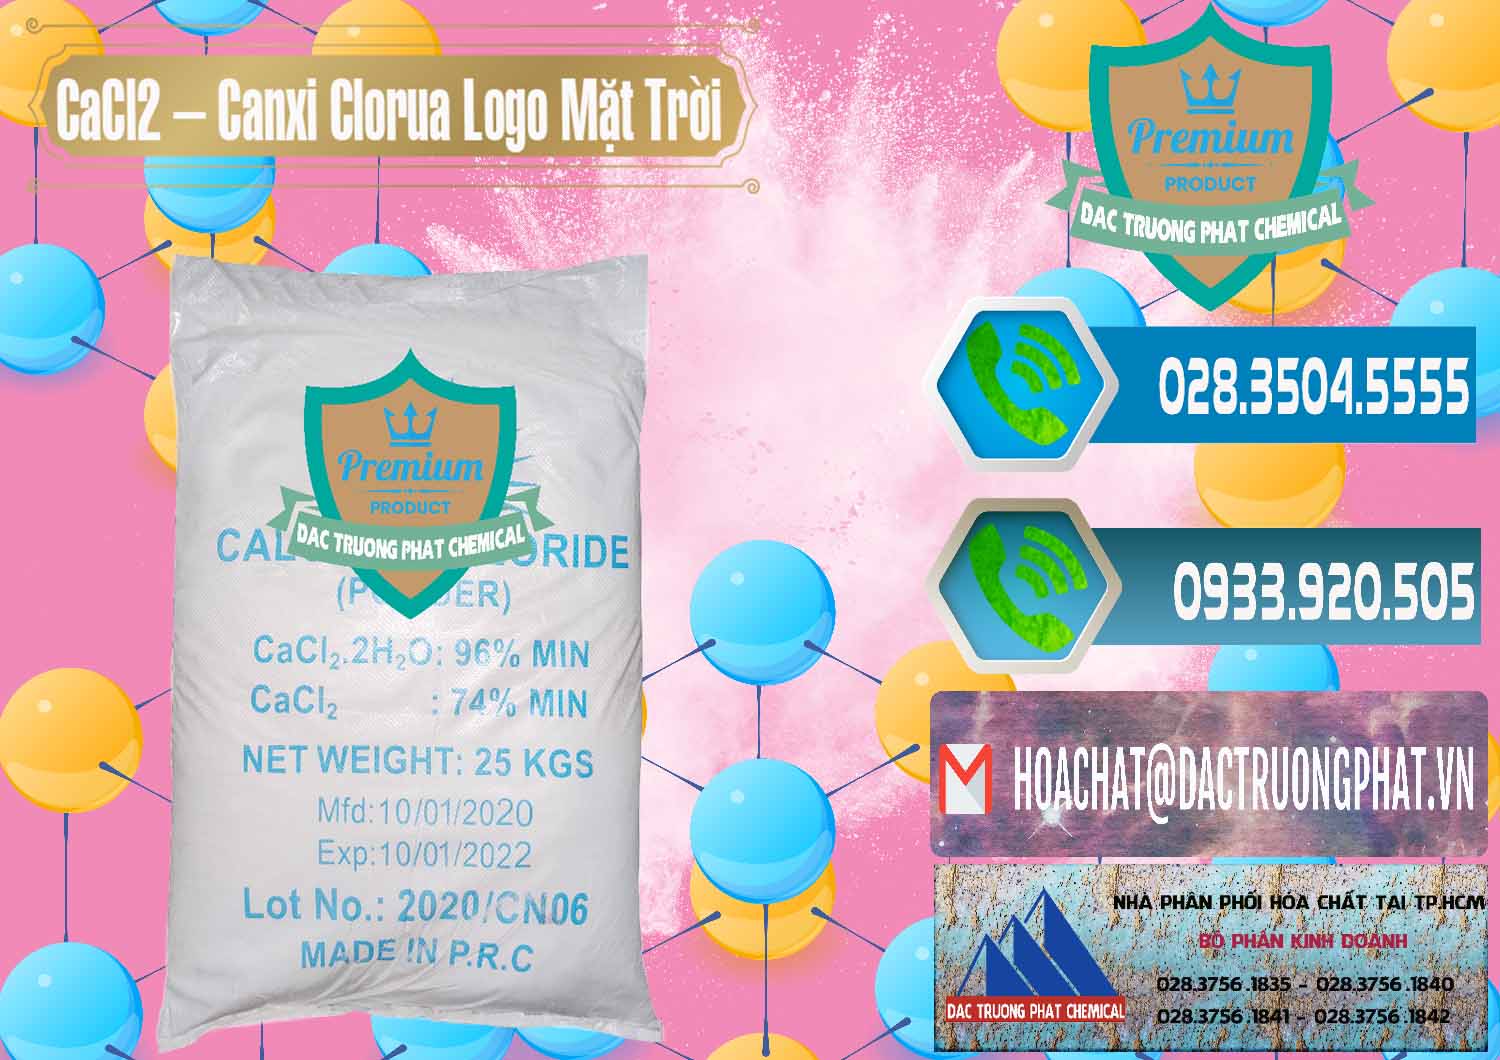 Kinh doanh - bán CaCl2 – Canxi Clorua 96% Logo Mặt Trời Trung Quốc China - 0041 - Đơn vị phân phối ( cung cấp ) hóa chất tại TP.HCM - congtyhoachat.net